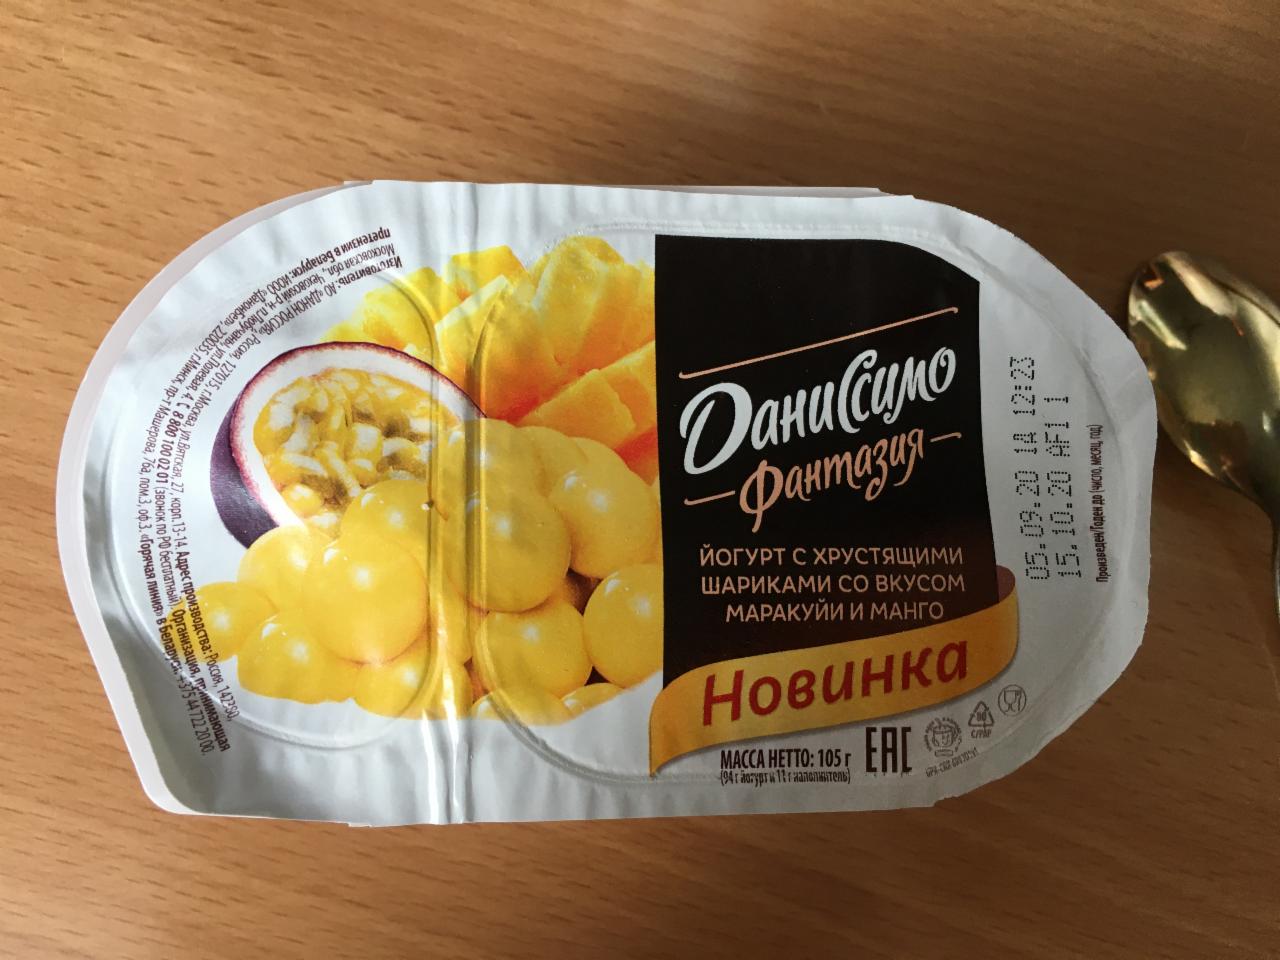 Фото - йогурт с хрустящими шариками со вкусом маракуя и манго Даниссимо